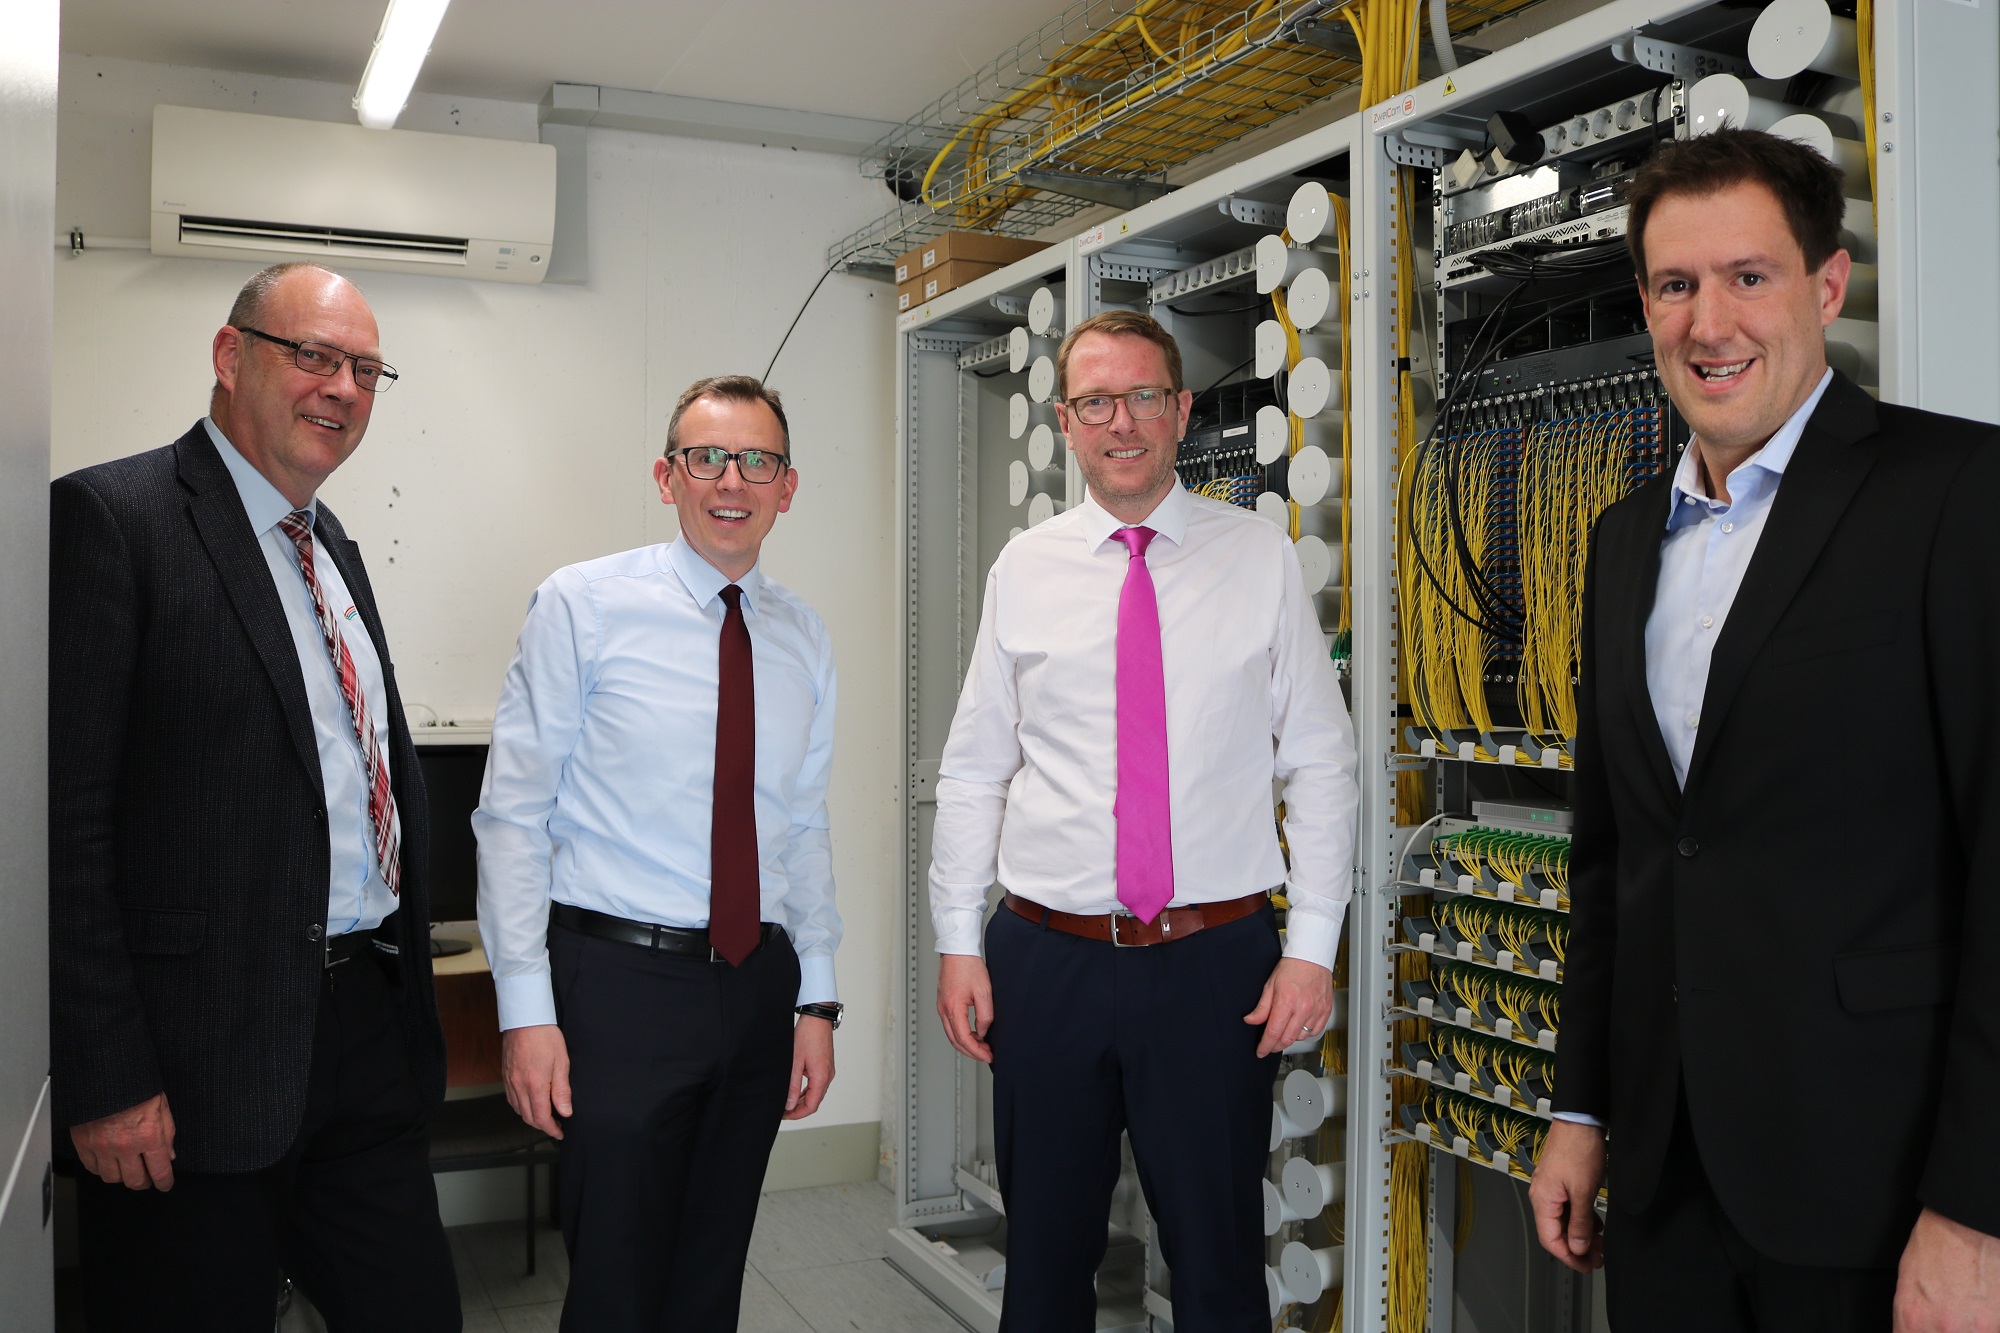 Der niedersächsische Staatssekretär für Digitales, Stefan Muhle, überzeugt sich im Schwarzwald-Baar-Kreis vom vorzeigbaren Ausbau einer zukunftsweisenden Glasfaser-Infrastruktur.